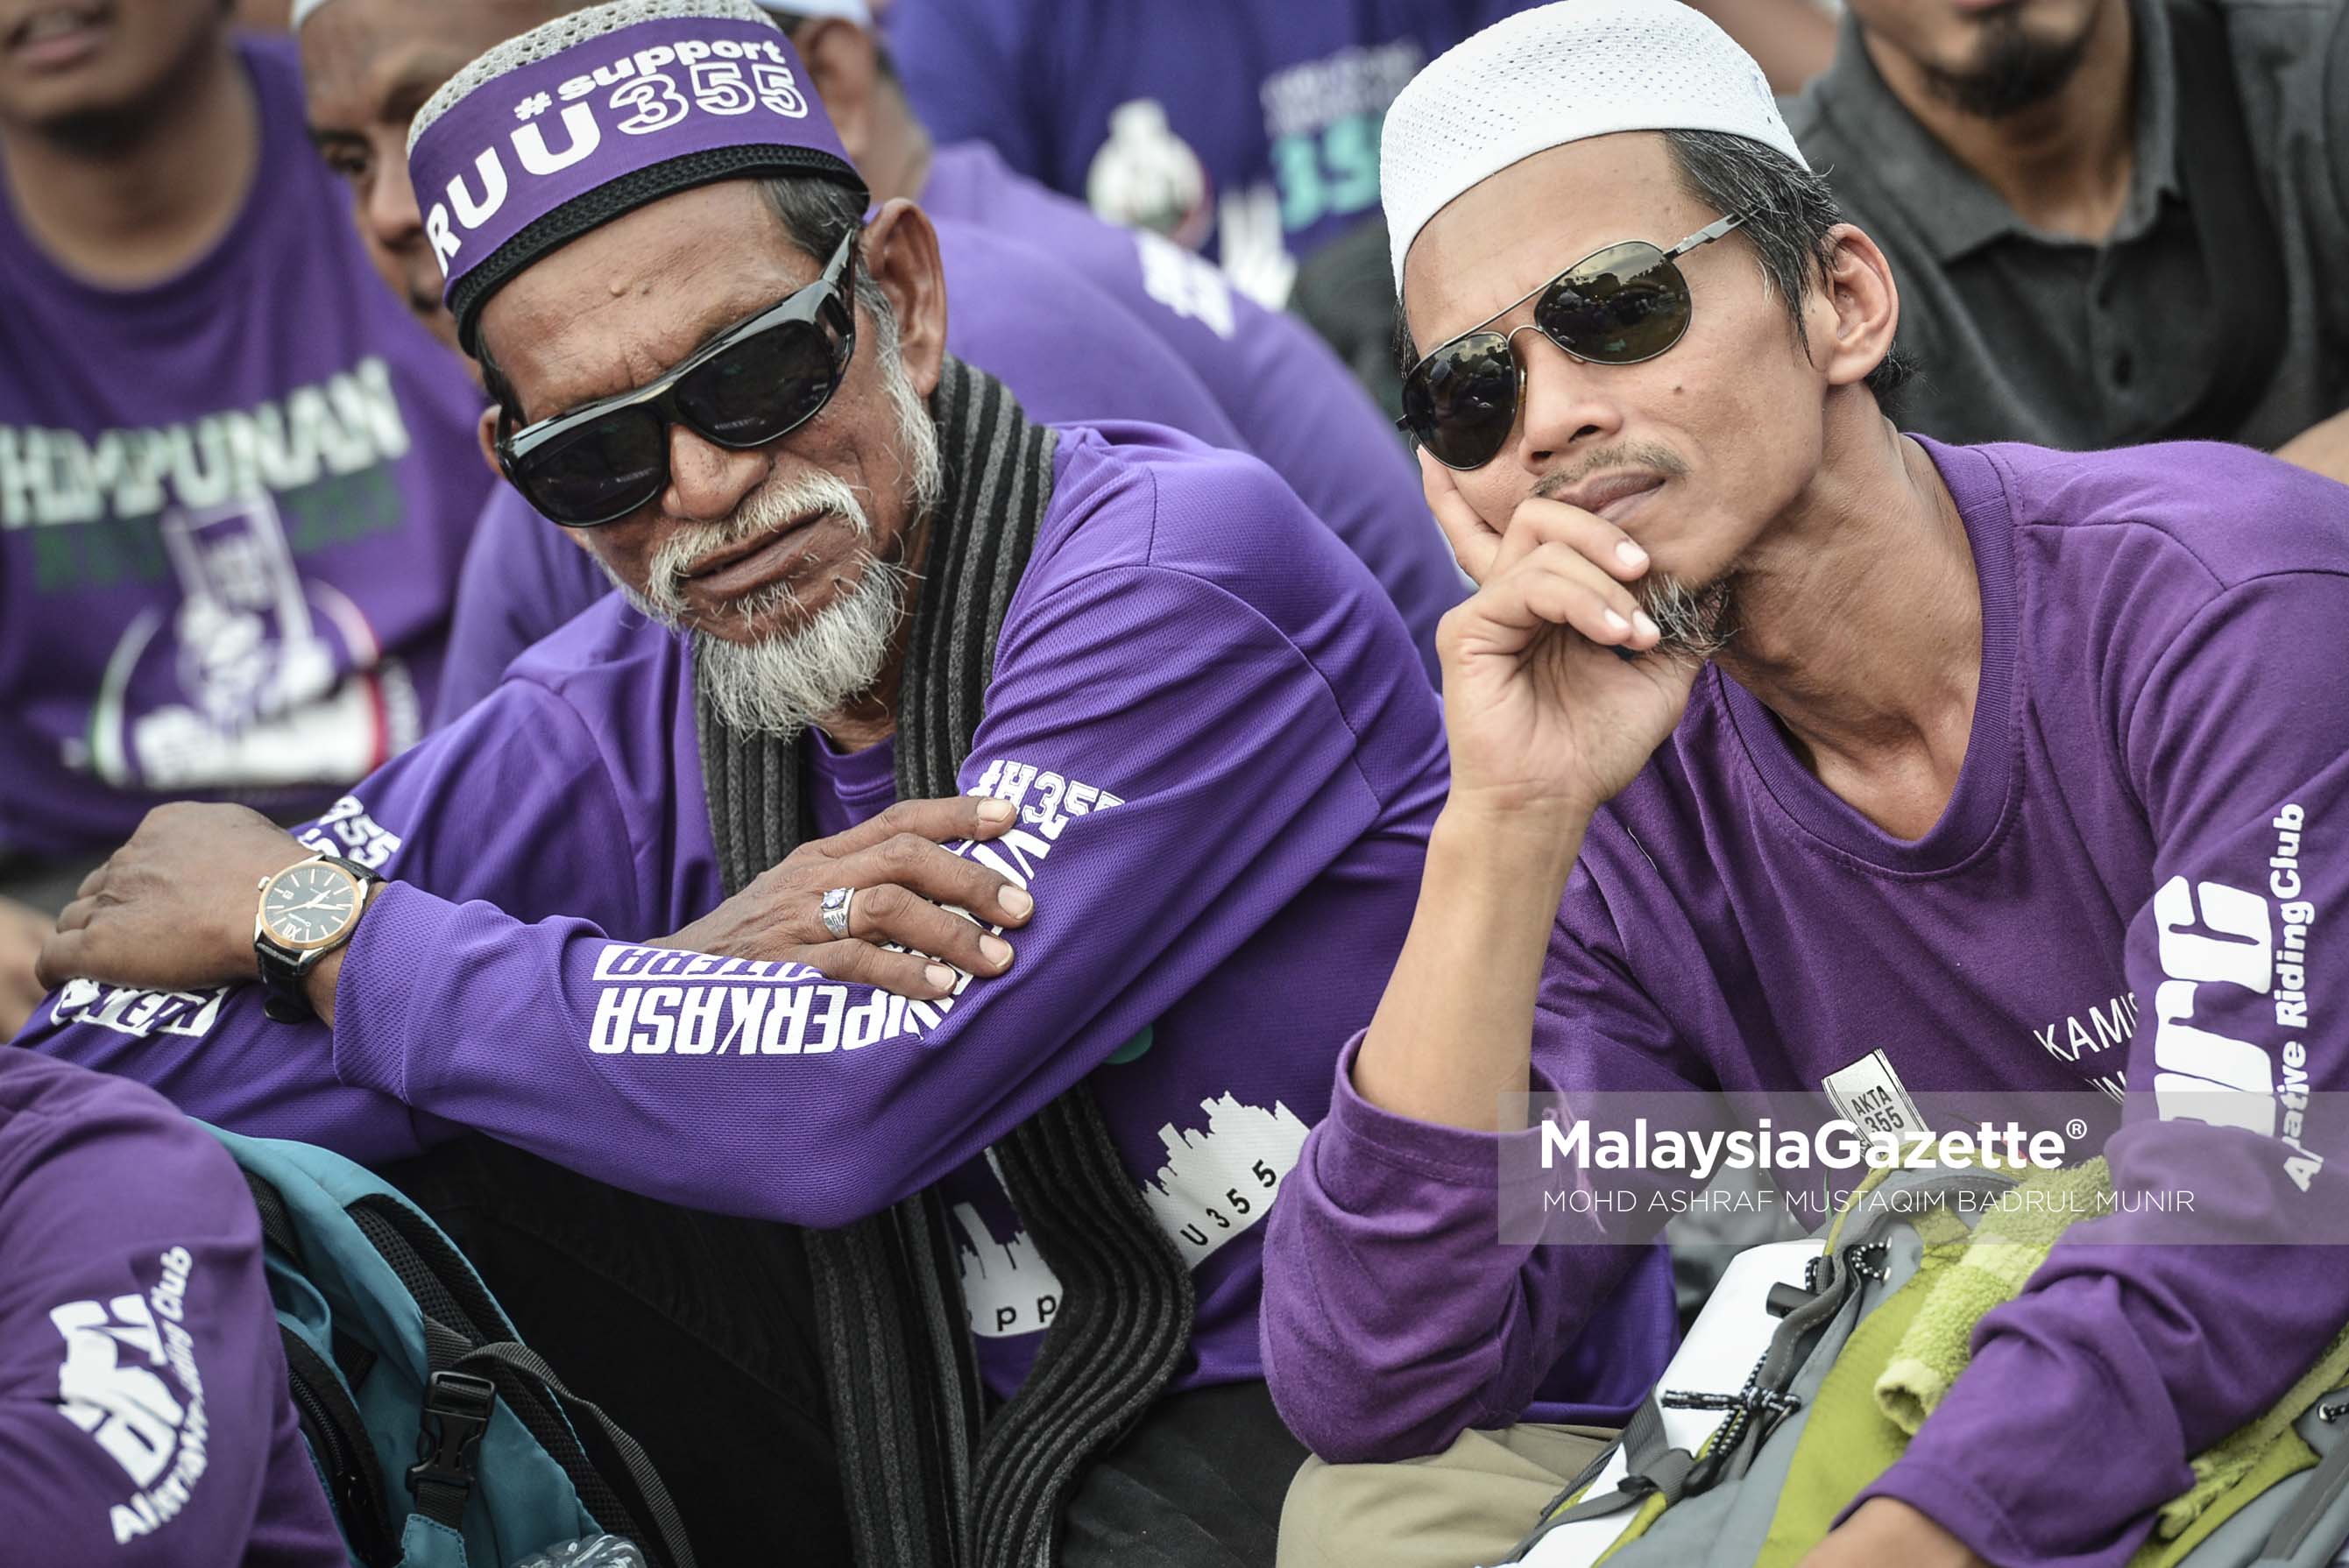 Antara reaksi penyokong pada Himpunan RUU 355 di Padang Merbok, Kuala Lumpur. foto ASHRAF MUSTAQIM BADRUL MUNIR, 18 FEBRUARI 2017.